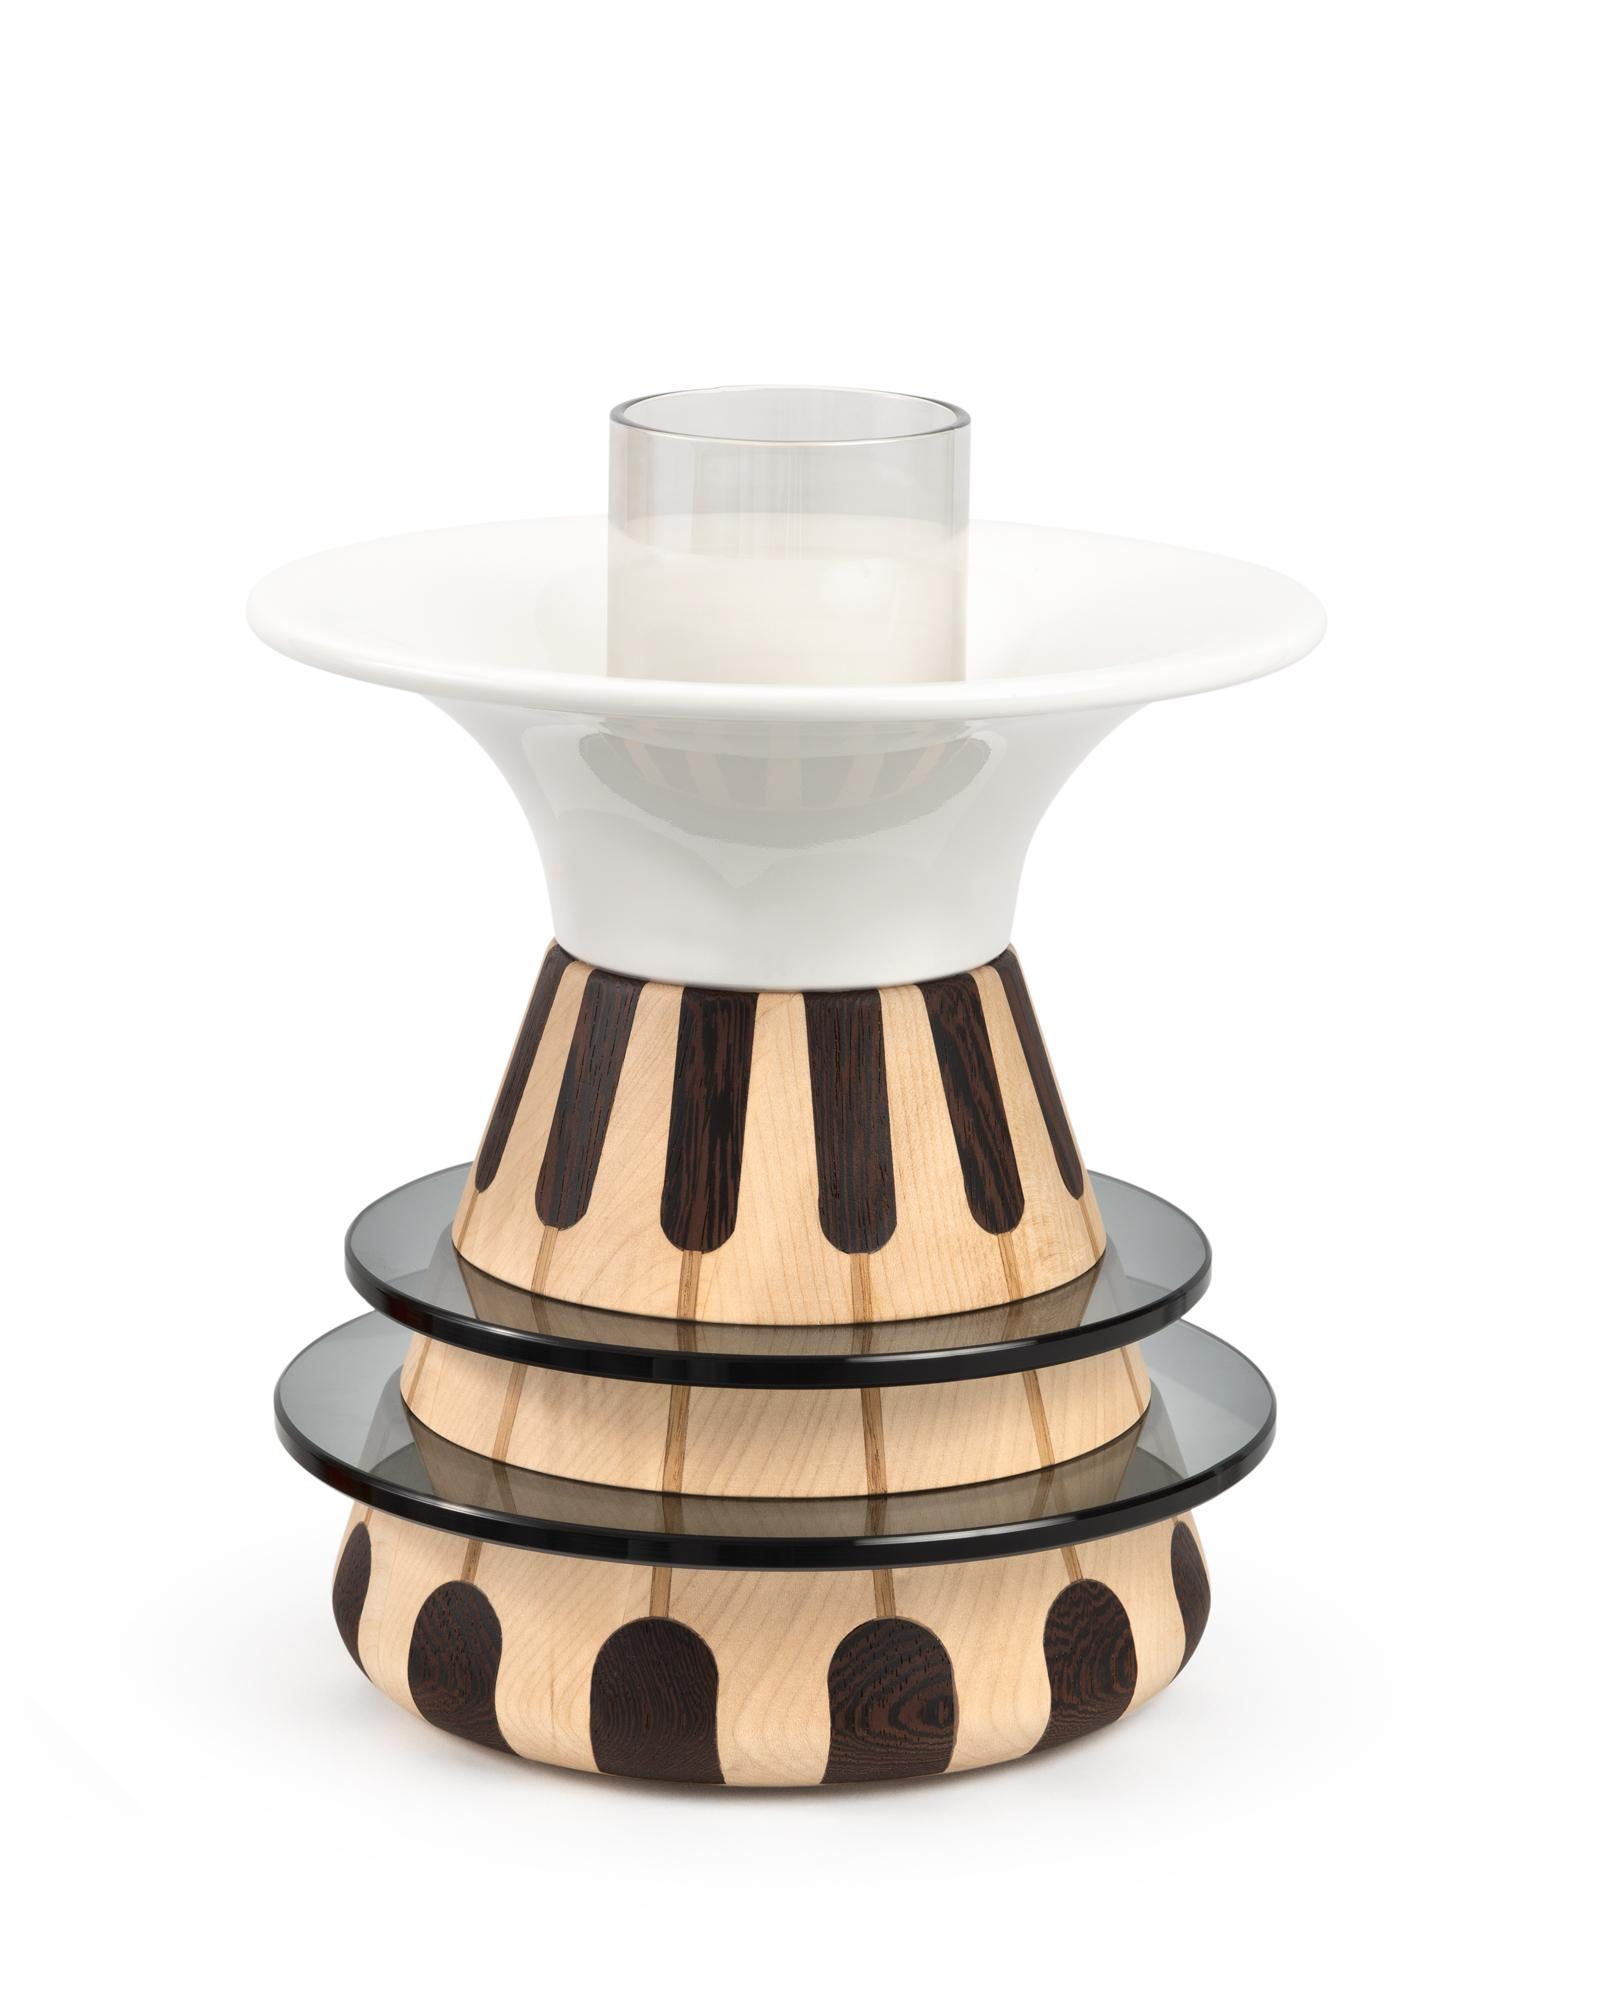 Catodo-Vase, Entwurf von Elena Salmistraro, Produkt von Scapin Collezioni

Das Design von Catodo ergibt sich aus einer eleganten Kombination von verschiedenen Volumen und Materialien. Durch das Zusammentreffen von raffinierten Wengé-, Eichen- und